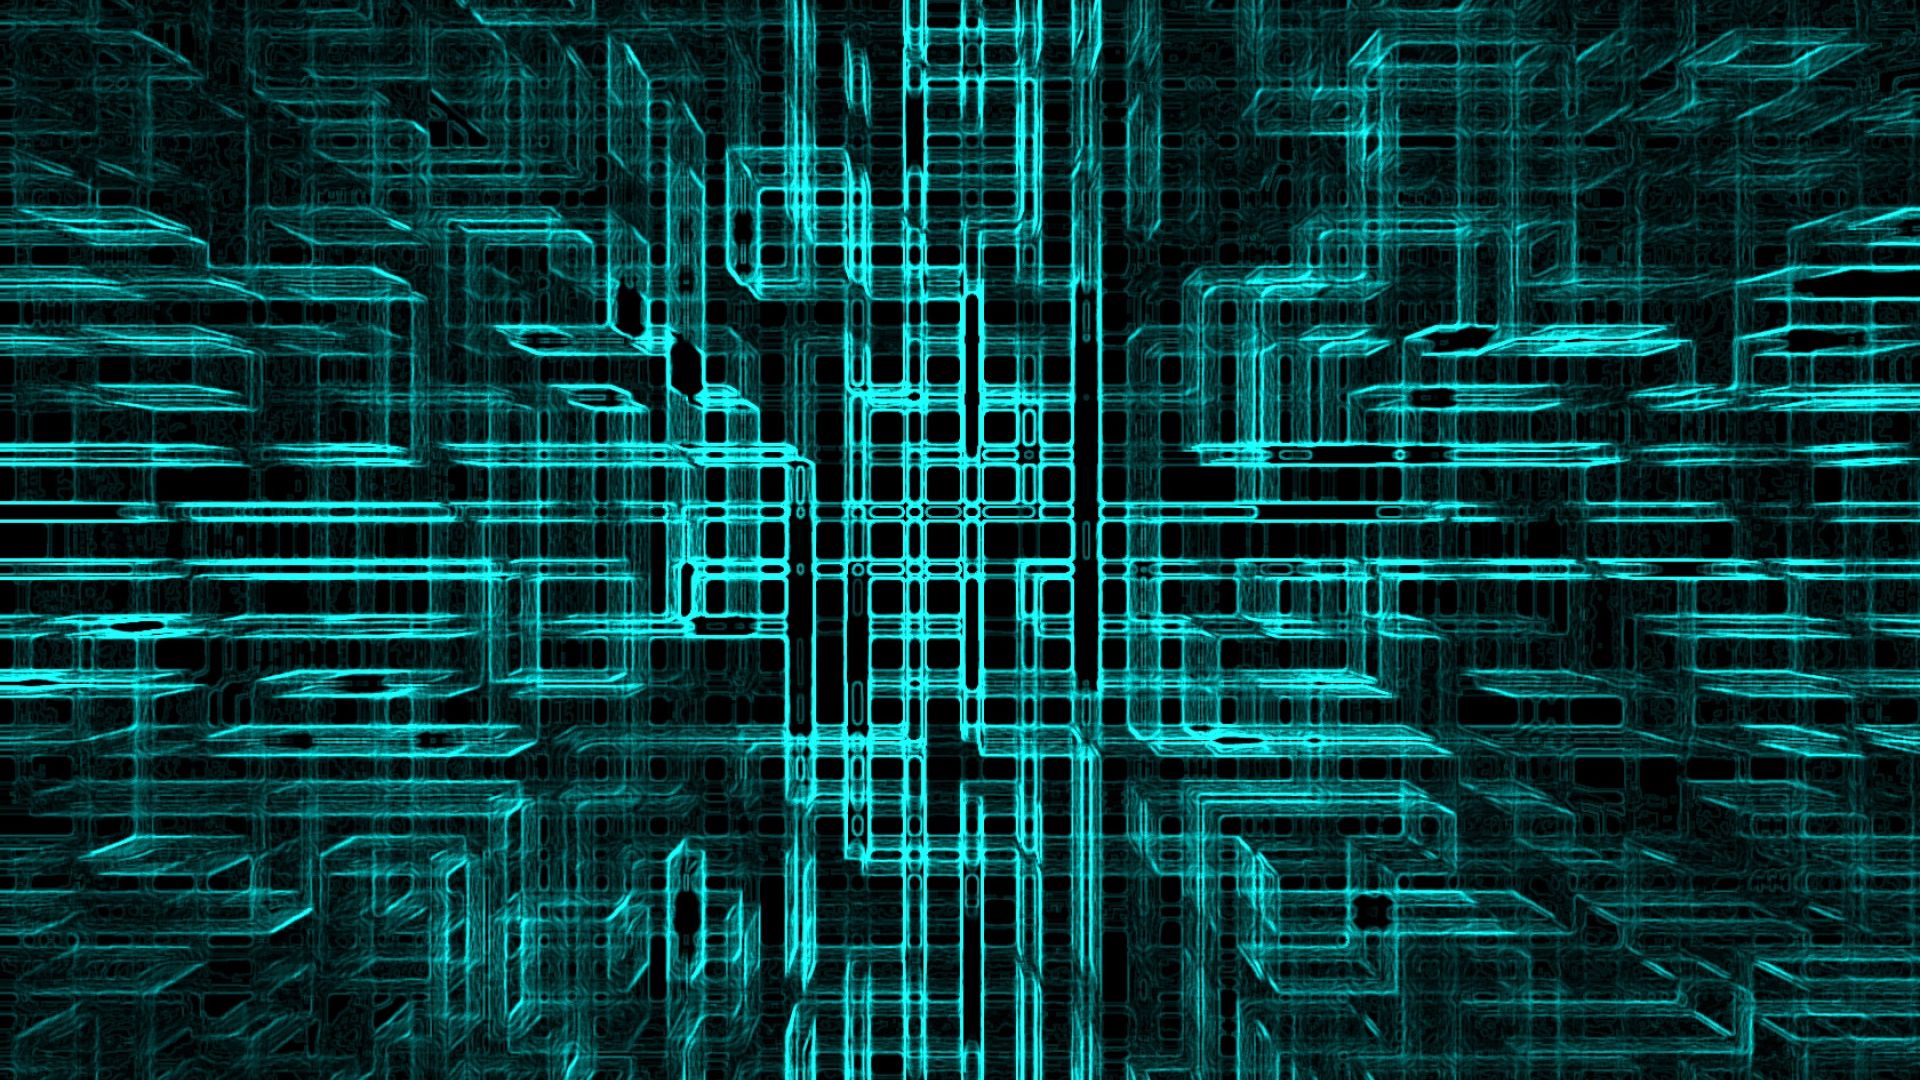 Fururistic Grid Pattern Futuristic Wallpaper HD